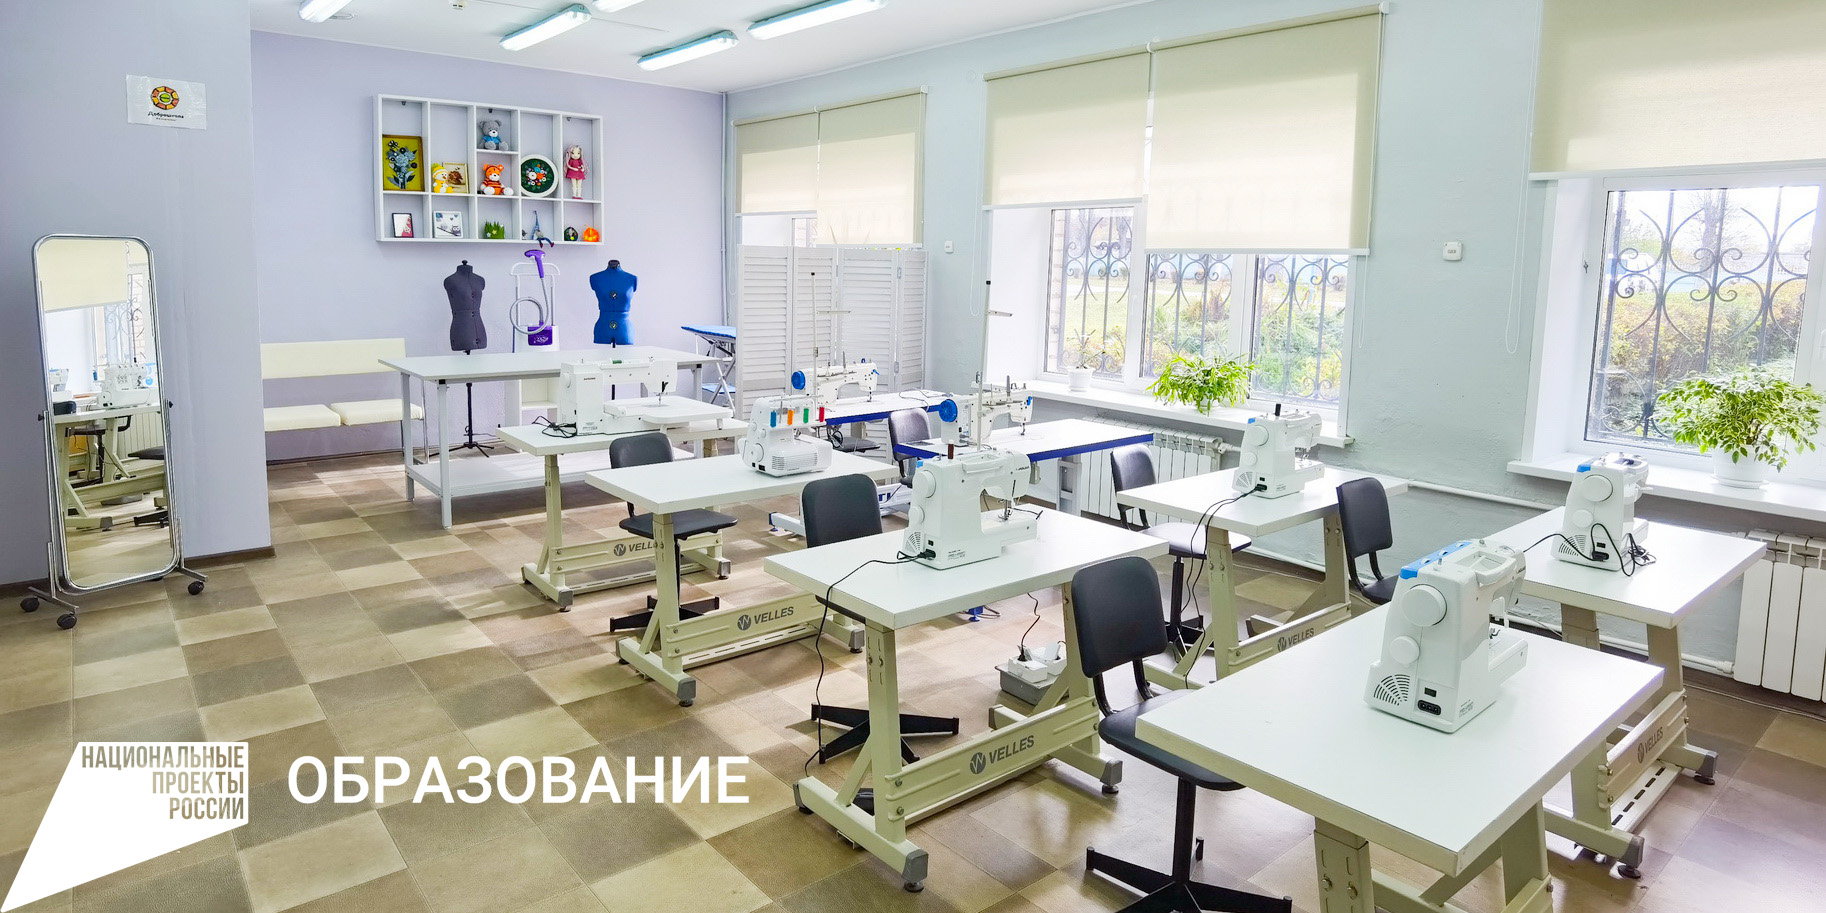 Новое оборудование поступило в три специализированные школы Ивановской области